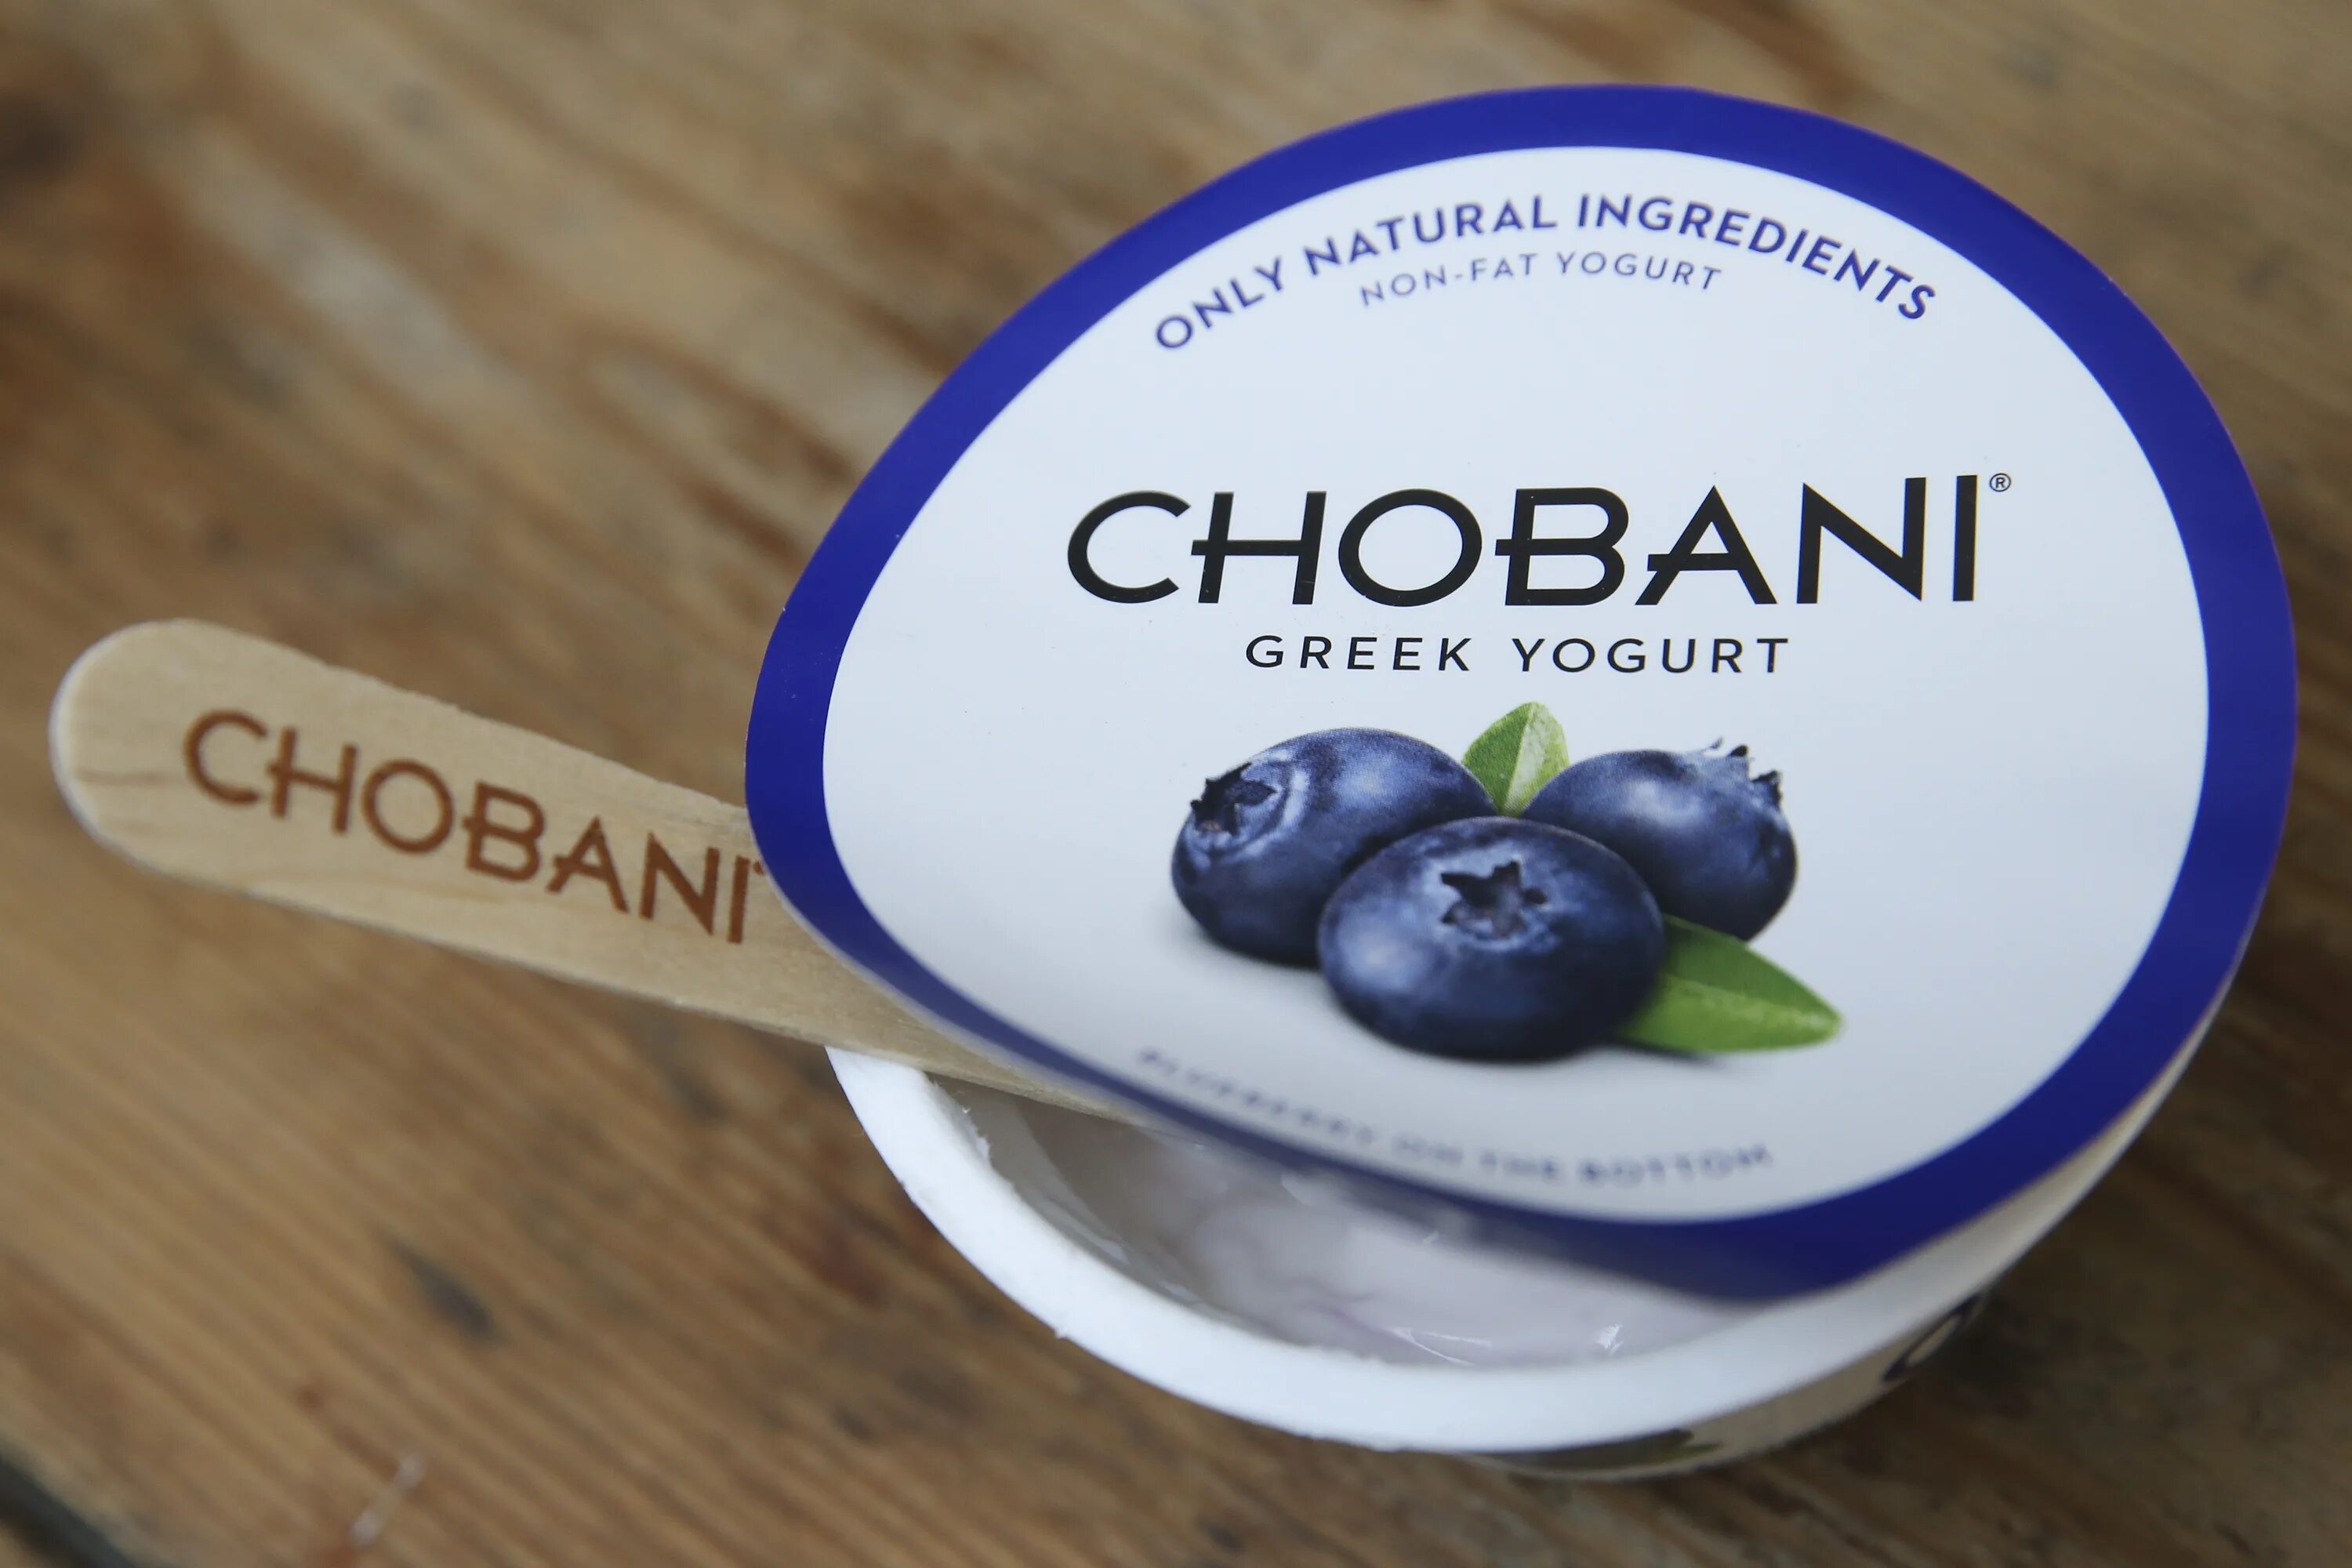 Польза греческого йогурта. Греческий йогурт. Chobani йогурт. Йогурт греческий натуральный. Греческий йогурт внутри.